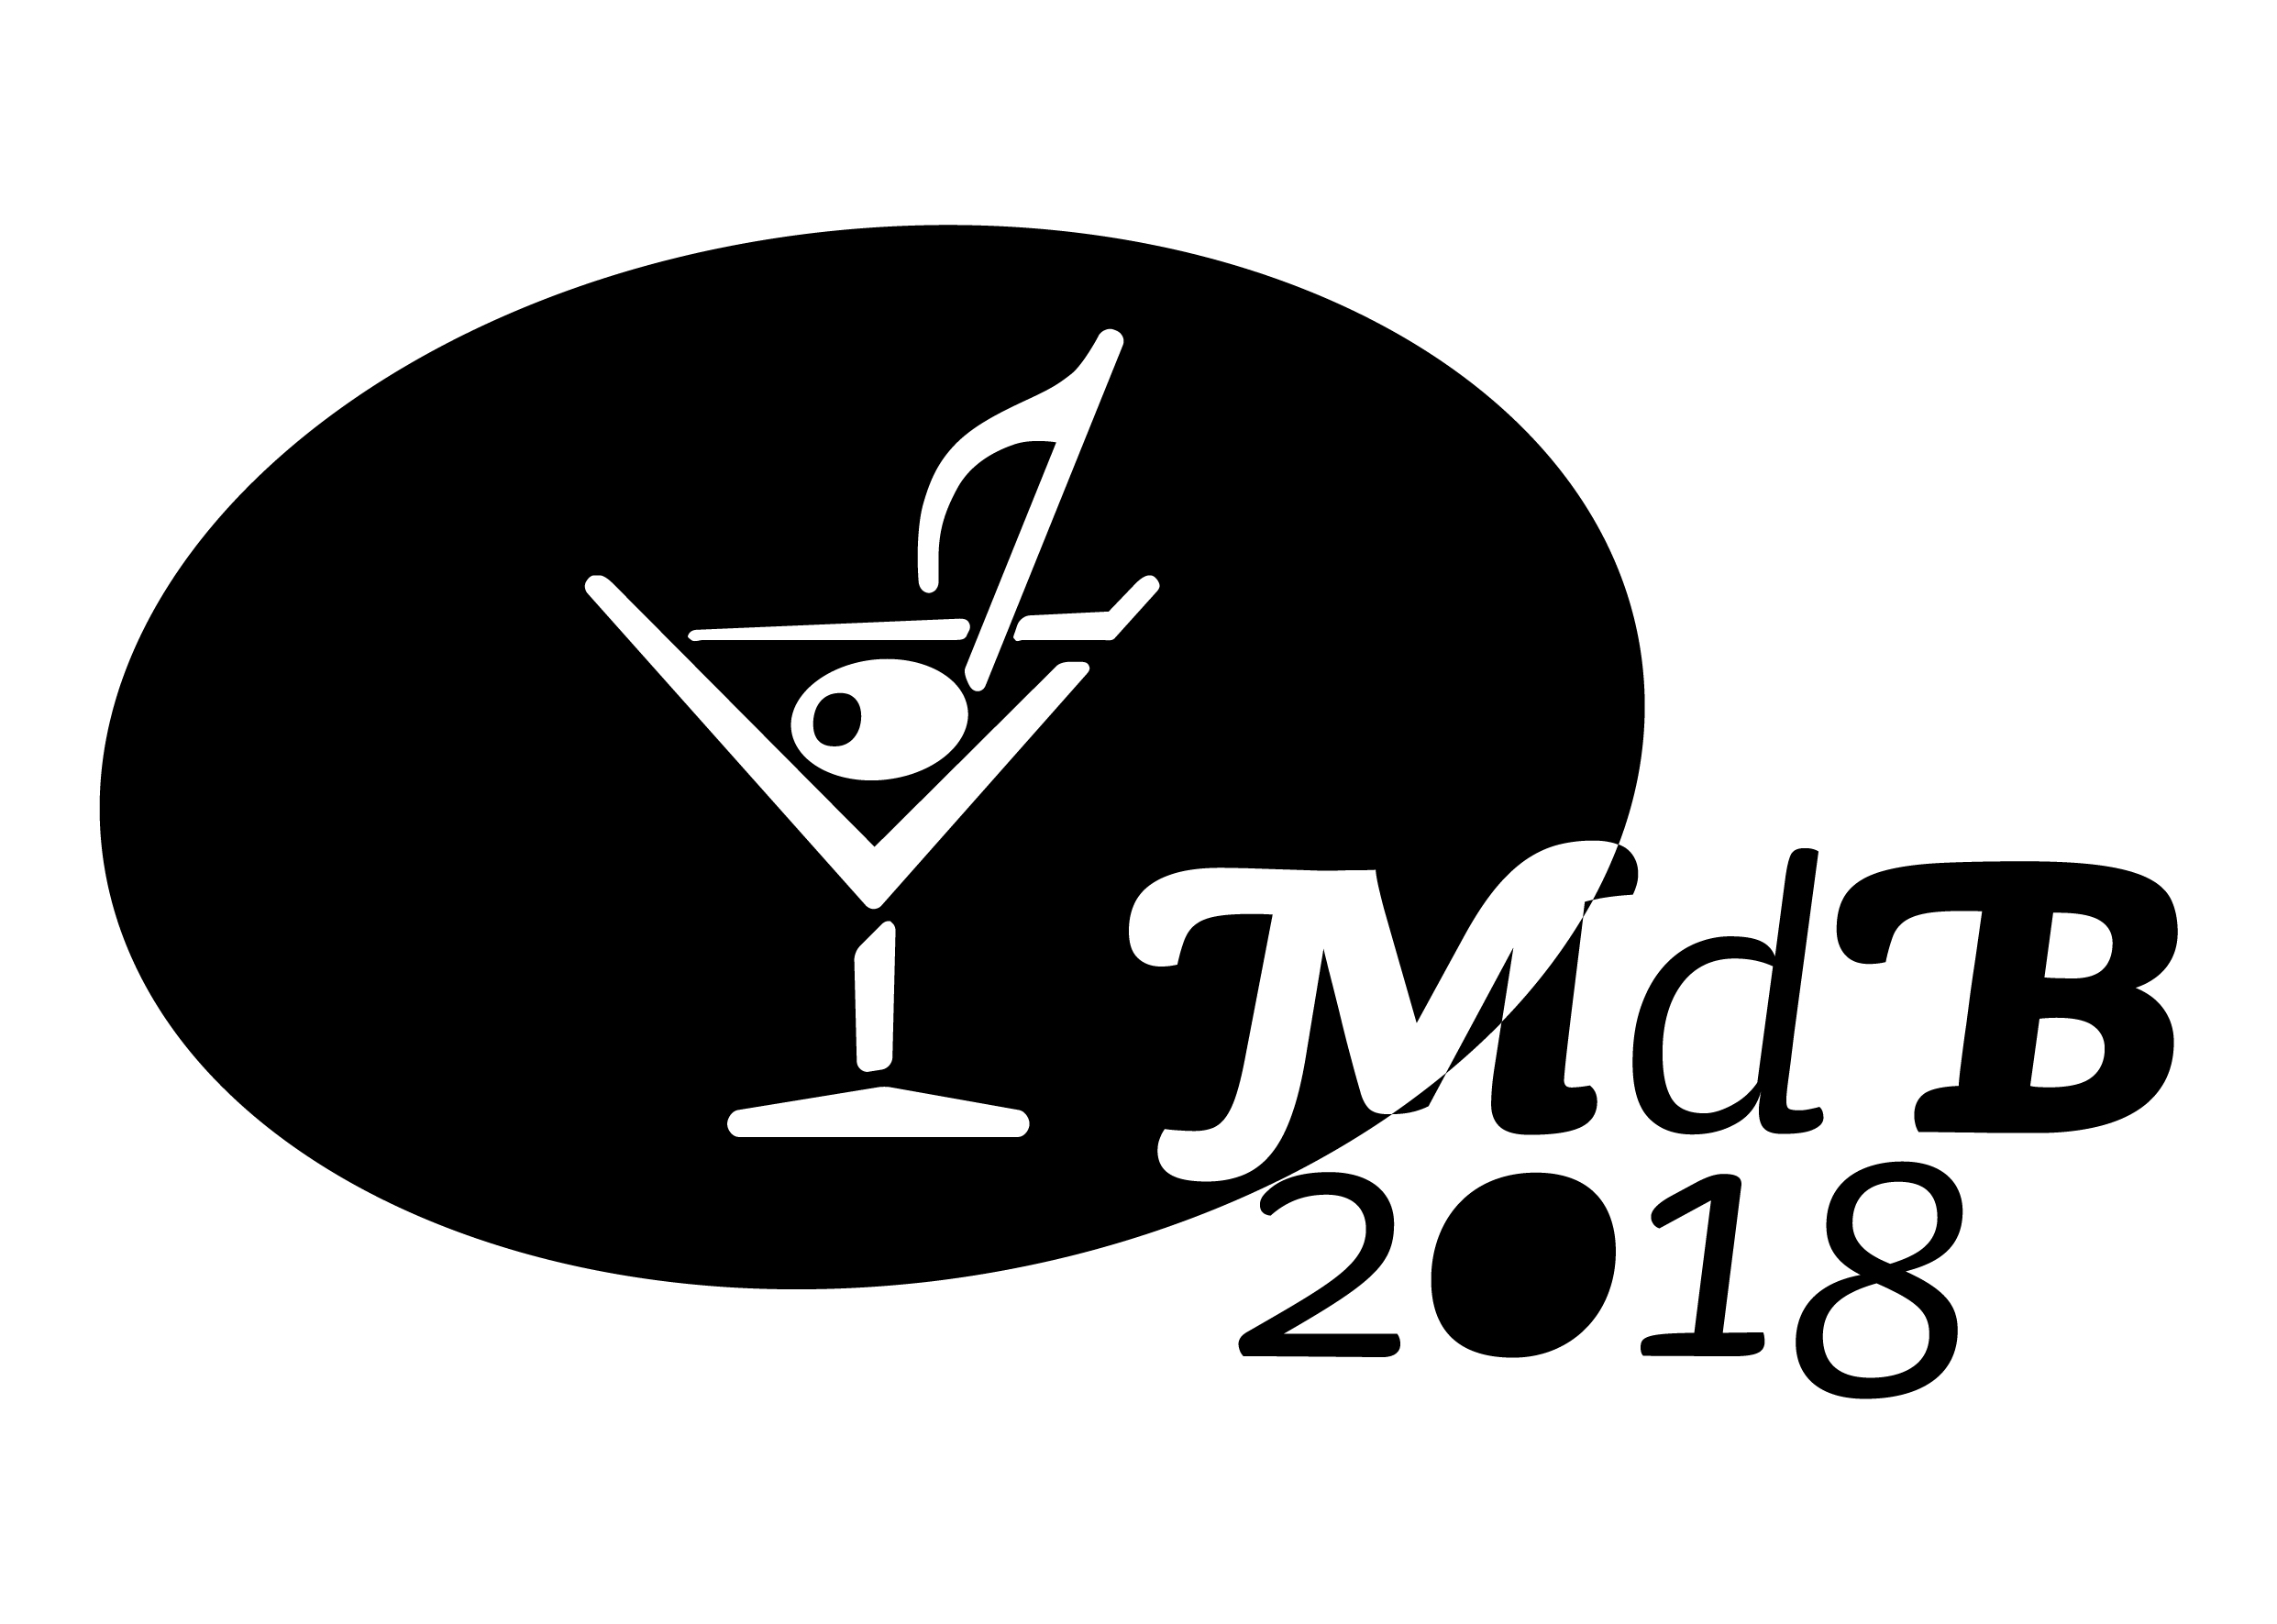 Mdb - Sponsor - Reload Soundfestival